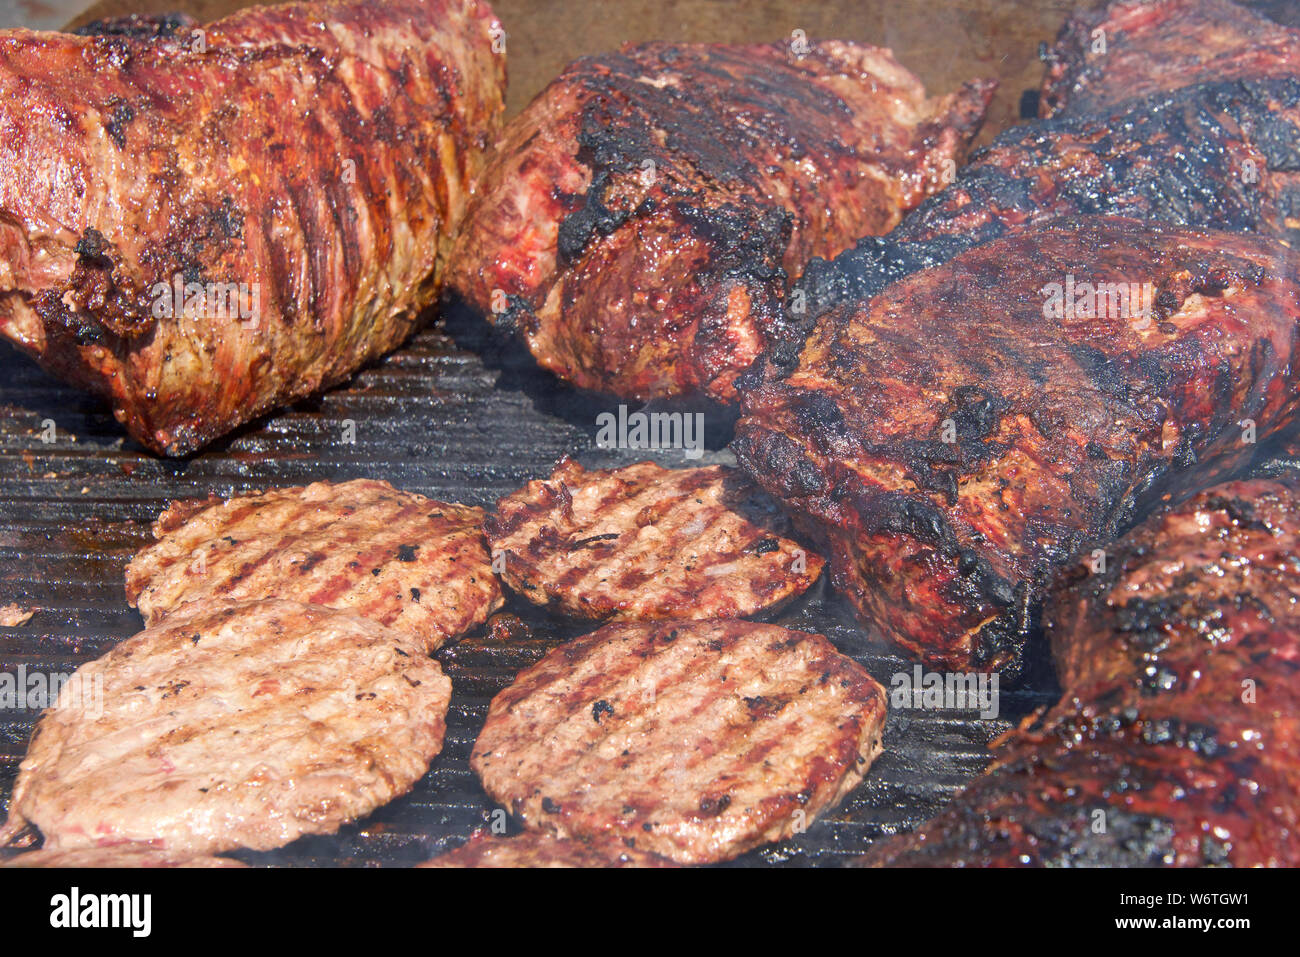 La cottura alla griglia una deliziosa varietà di carne su barbecue